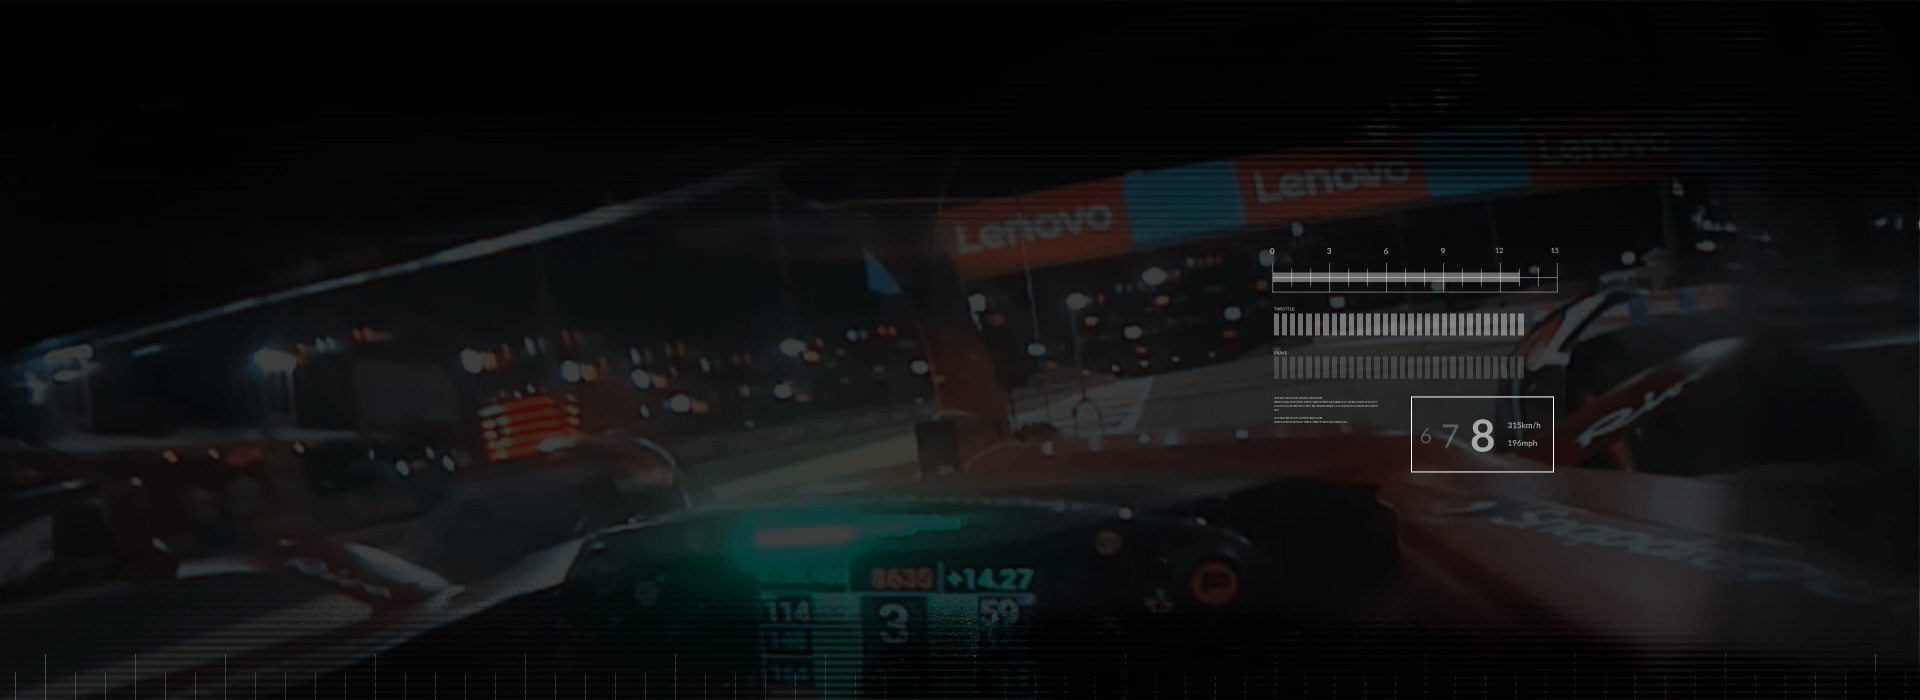 Perspectiva interior de un piloto de carreras de F1 pasando pancartas de Lenovo en una pista